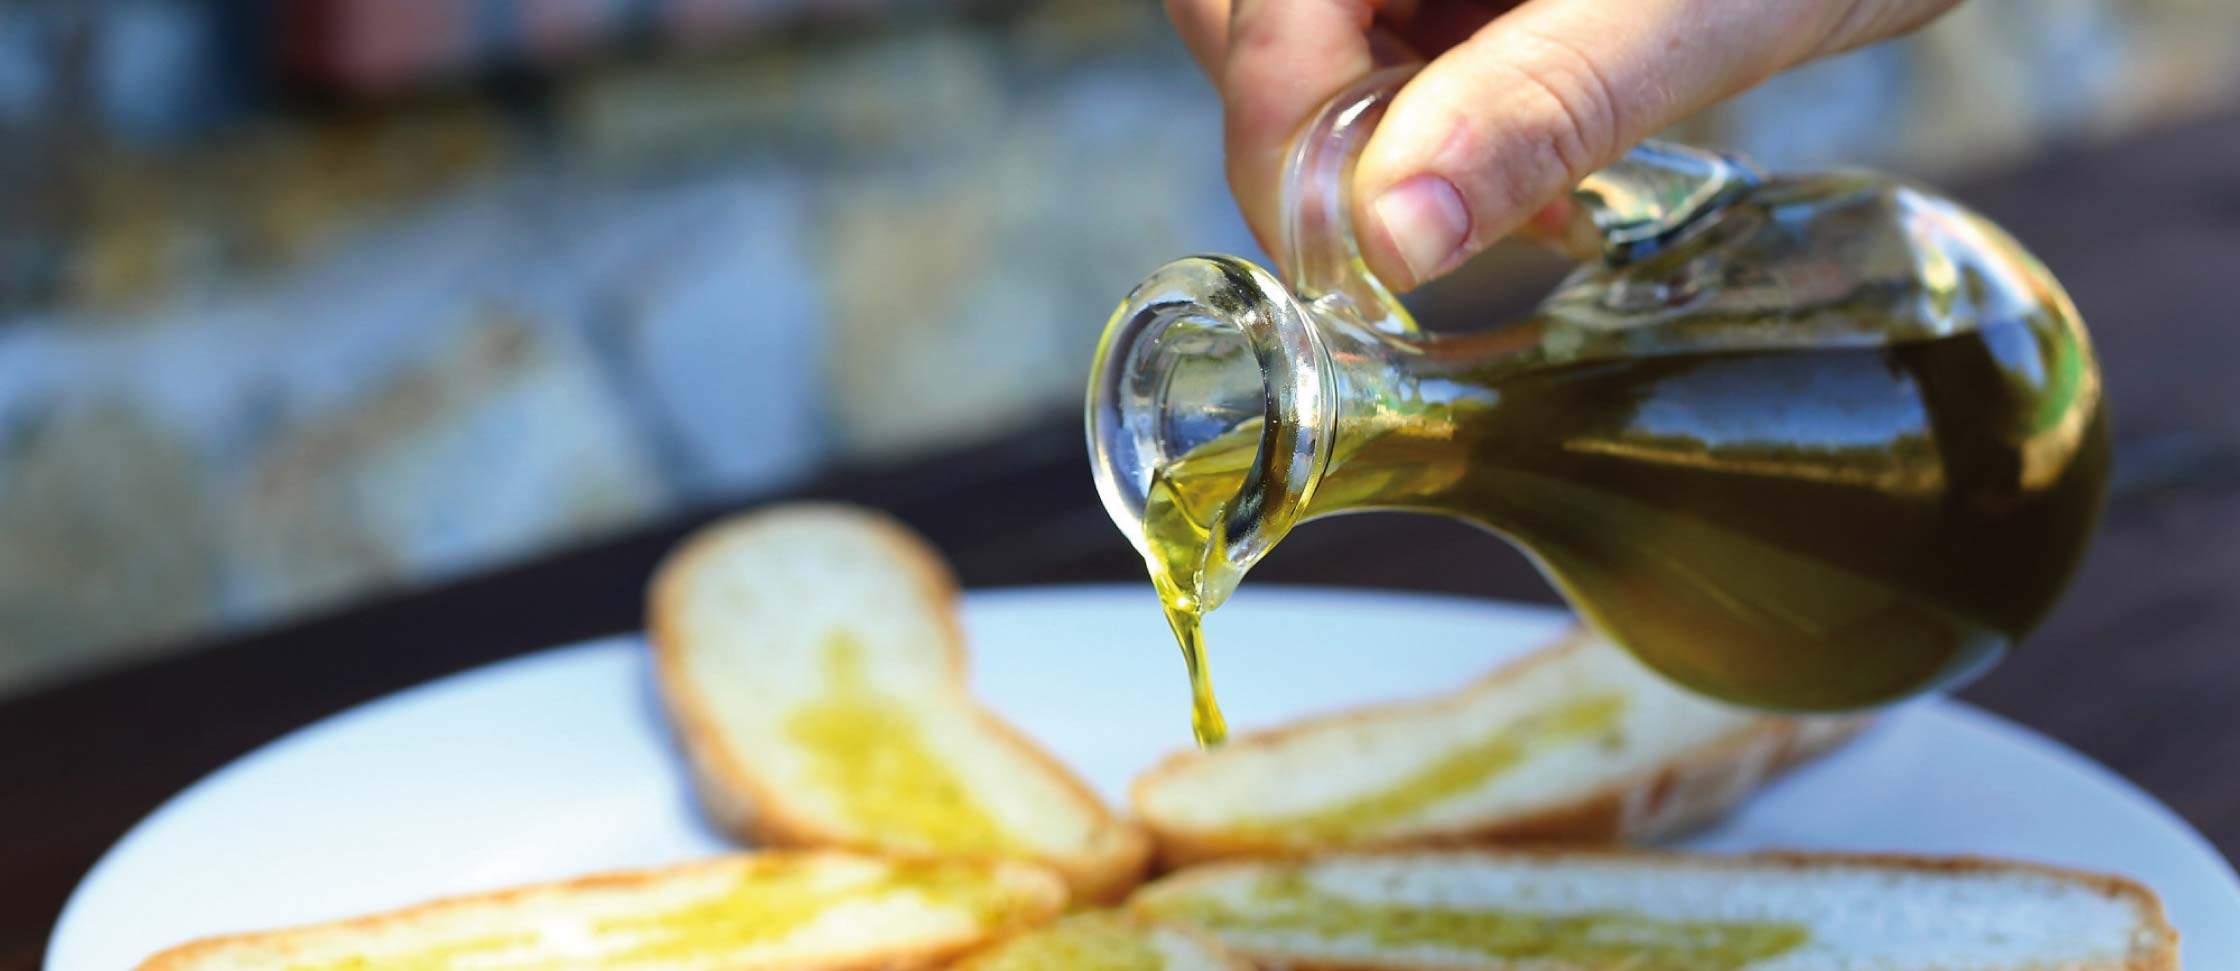 Degustazione olio extravergine d'oliva Puglia